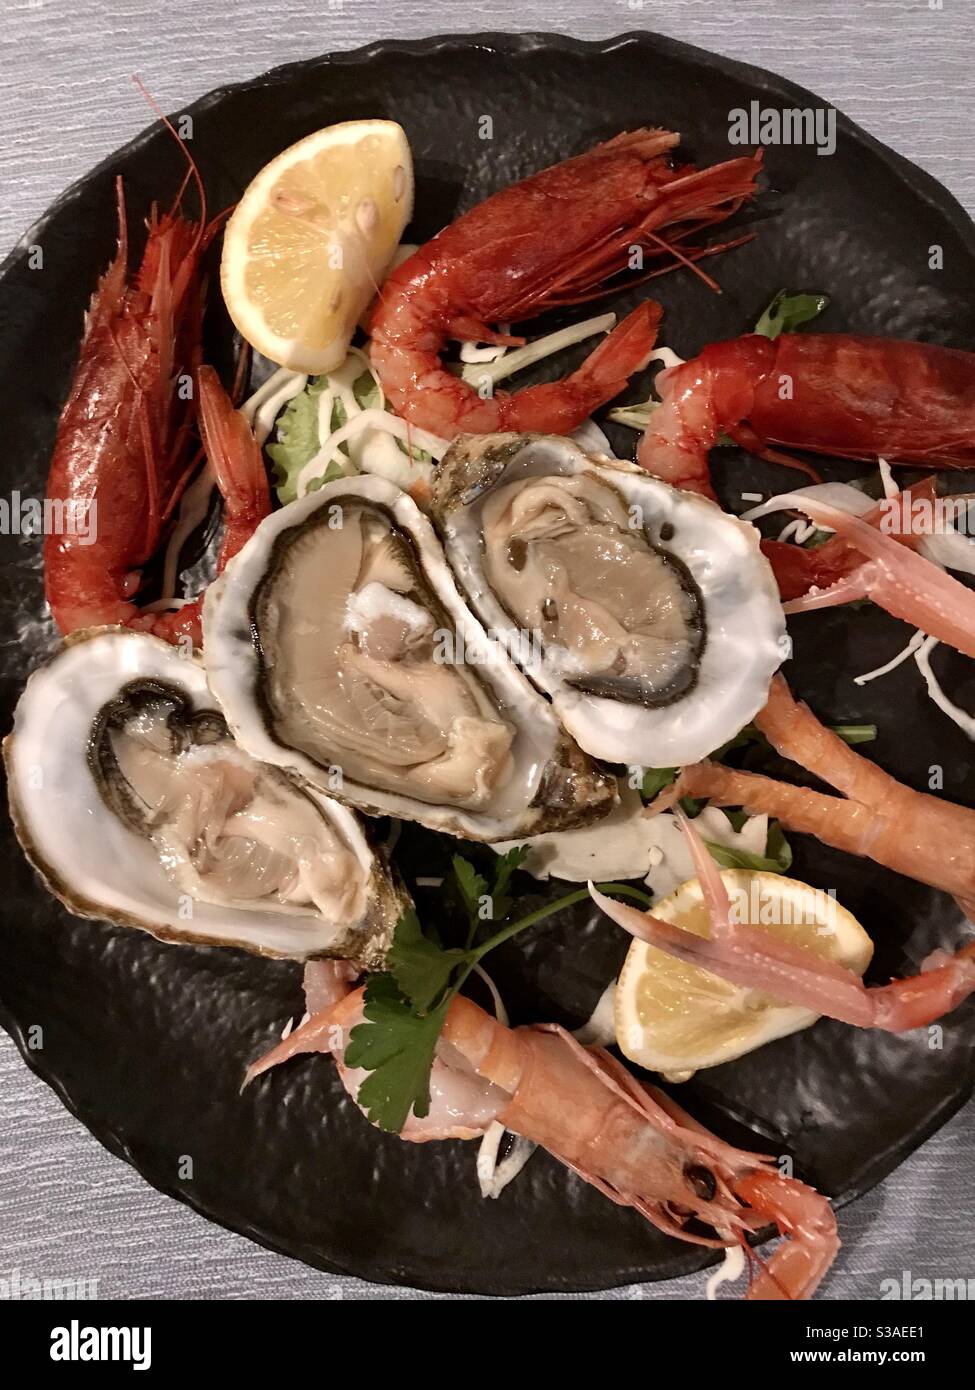 Vue panoramique d'un plat noir avec crustacés frais et fruits de mer : huîtres, crevettes rouges et crevettes, Italie Banque D'Images